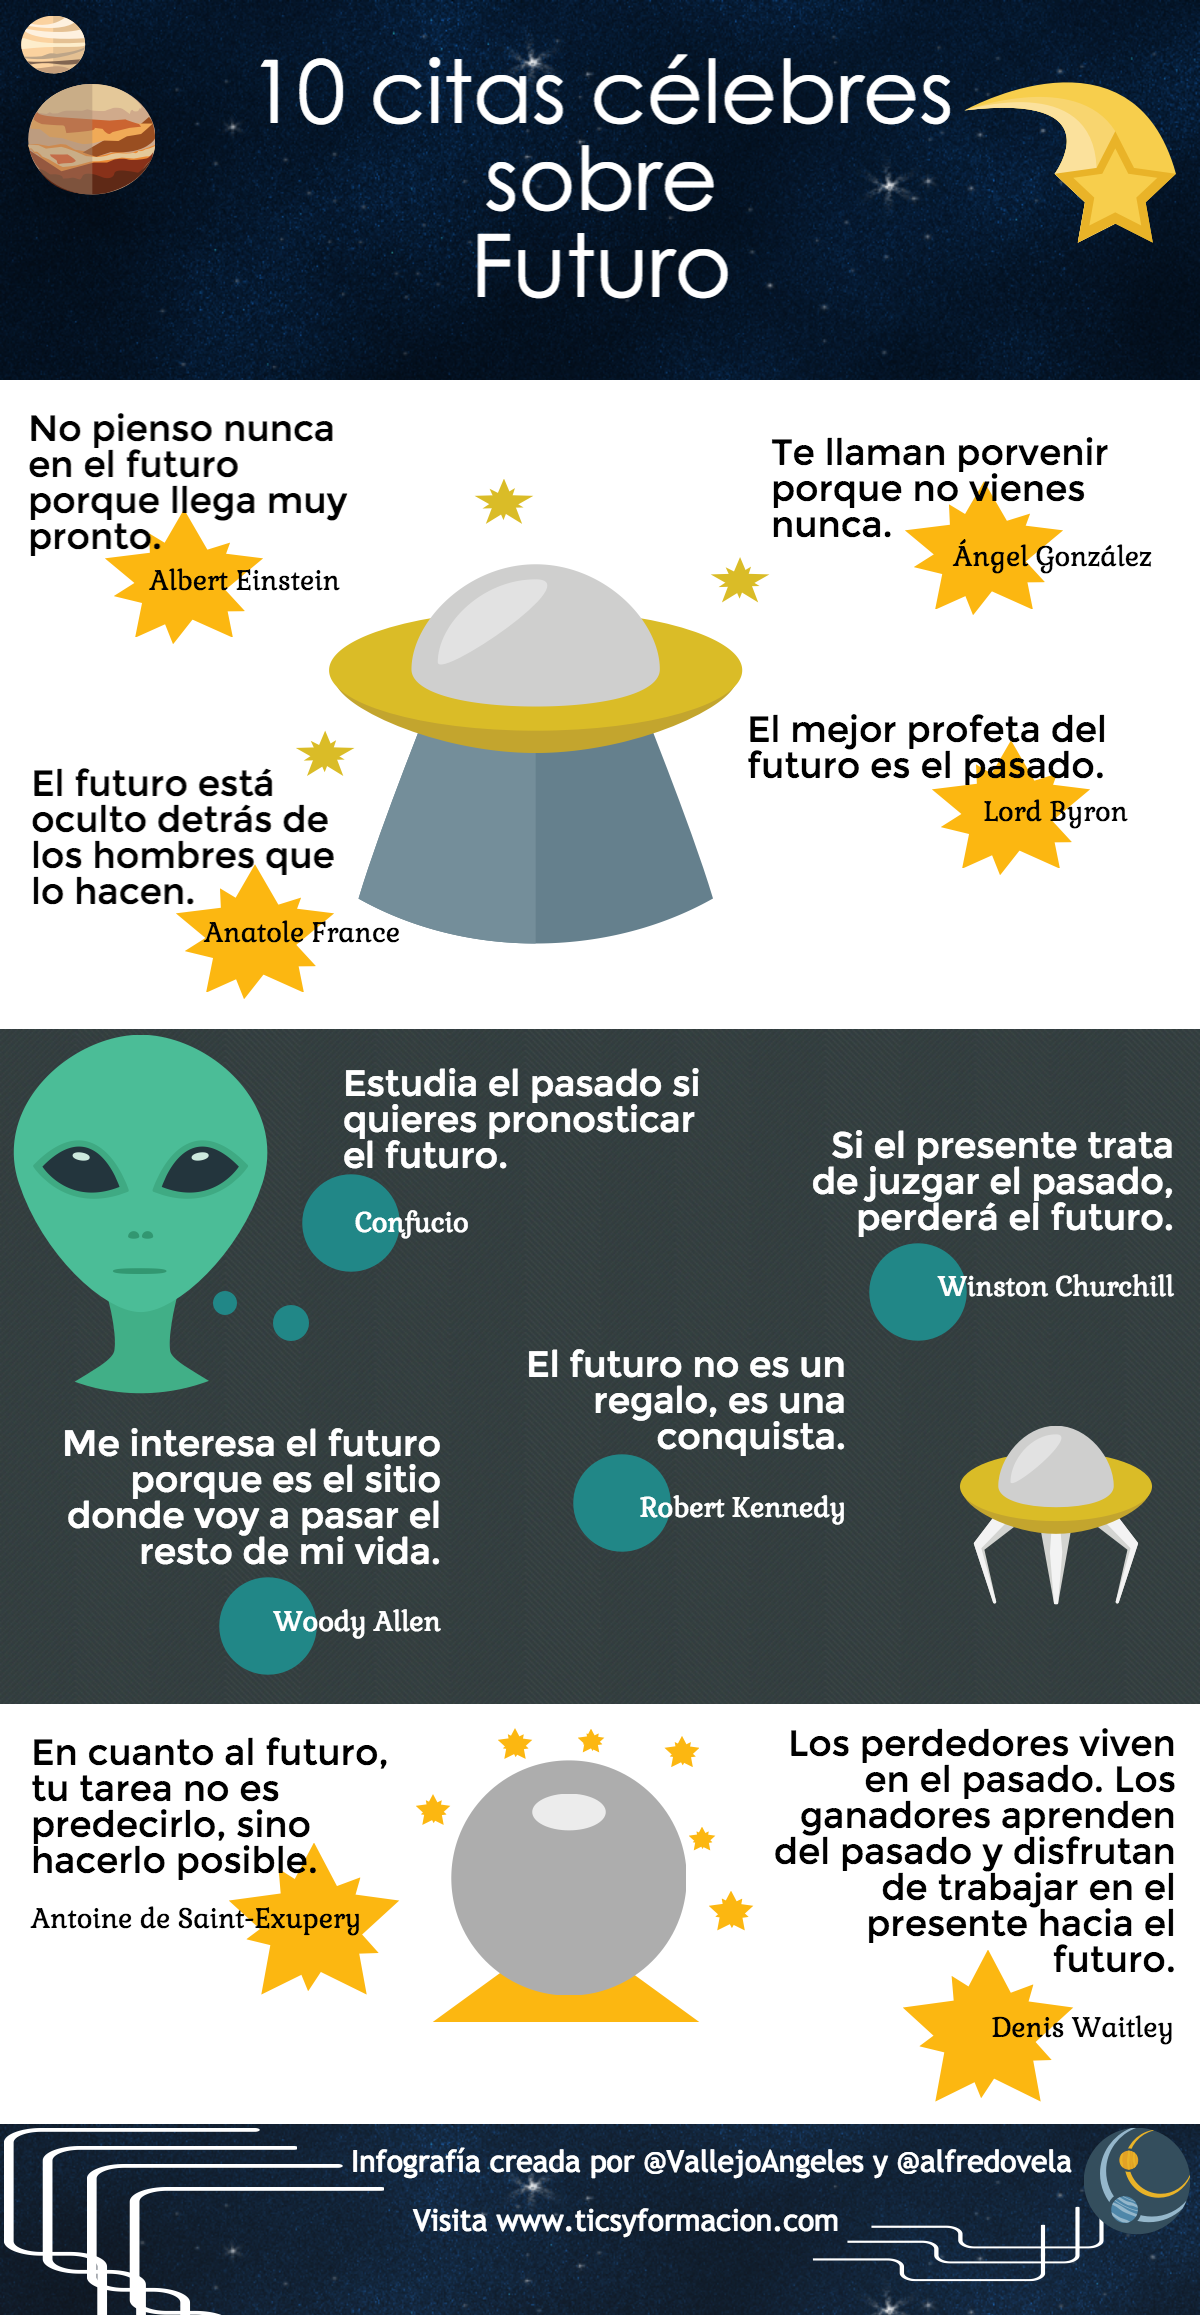 10 citas célebres sobre Futuro #infografia #infographic #citas #quotes -  TICs y Formación